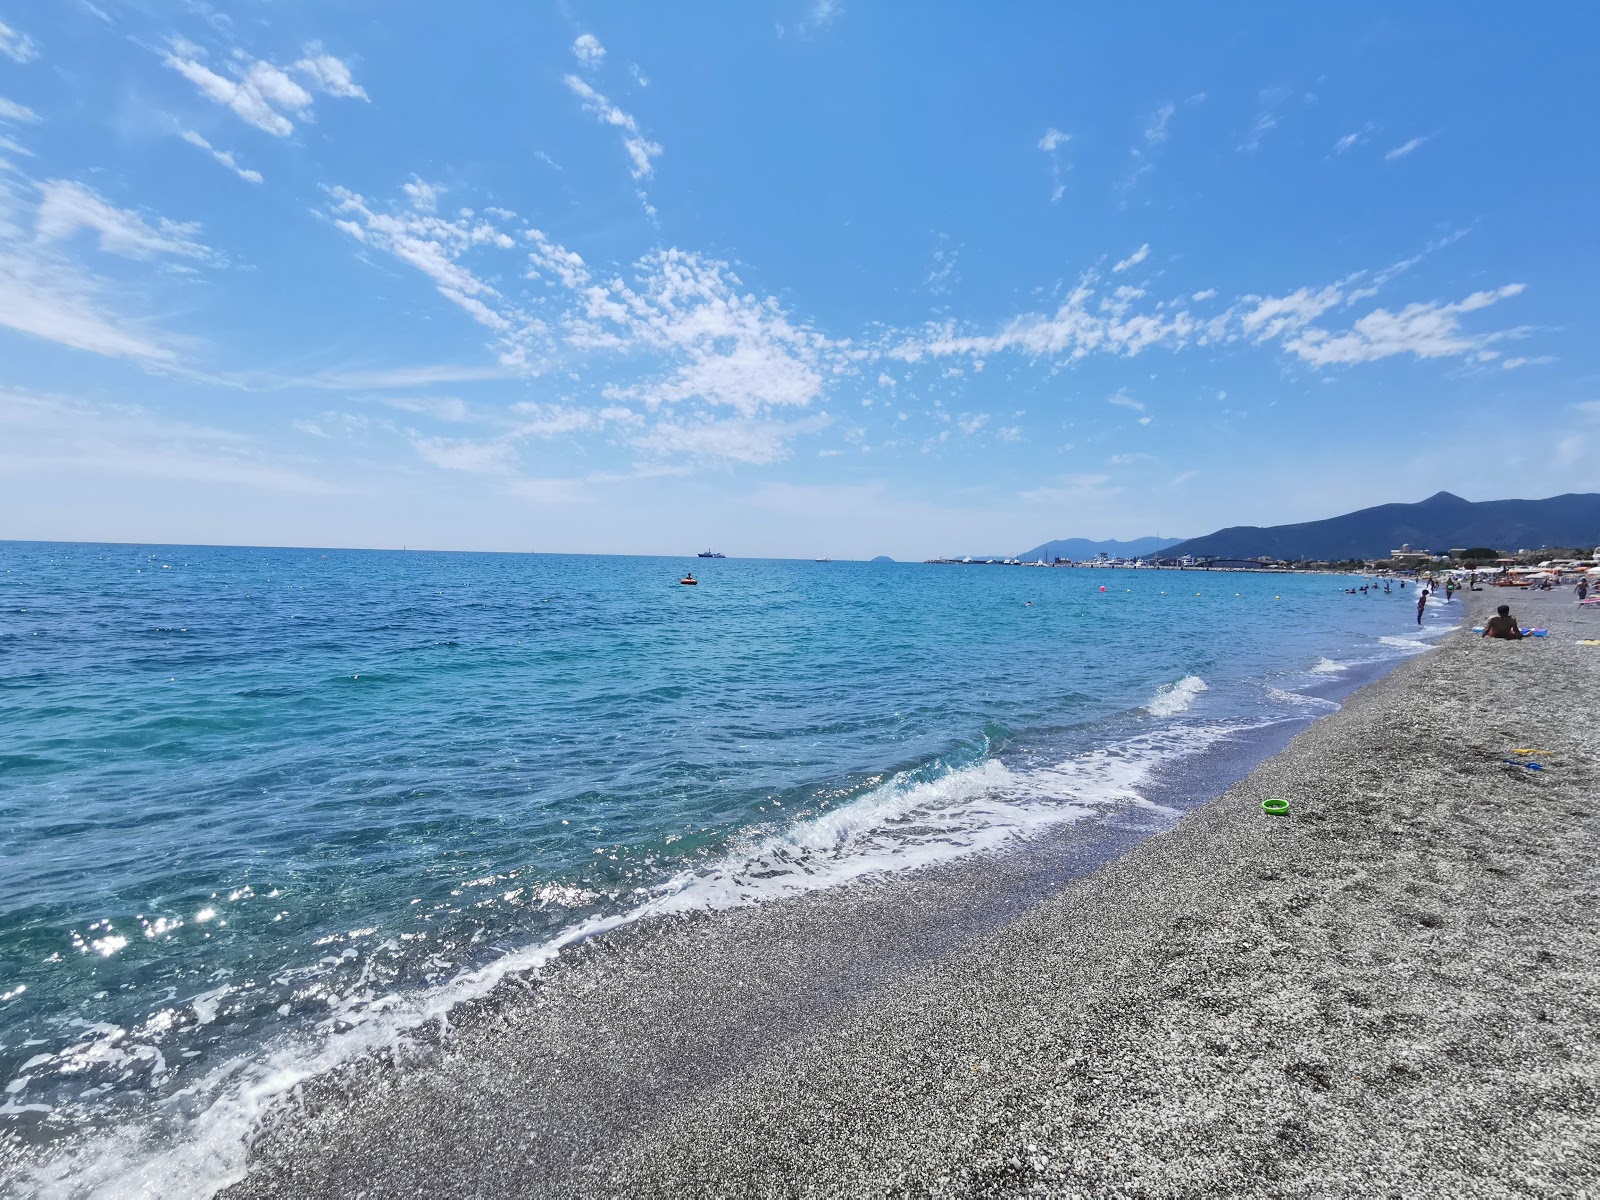 Foto af Spiaggia Pietra Ligure - populært sted blandt afslapningskendere